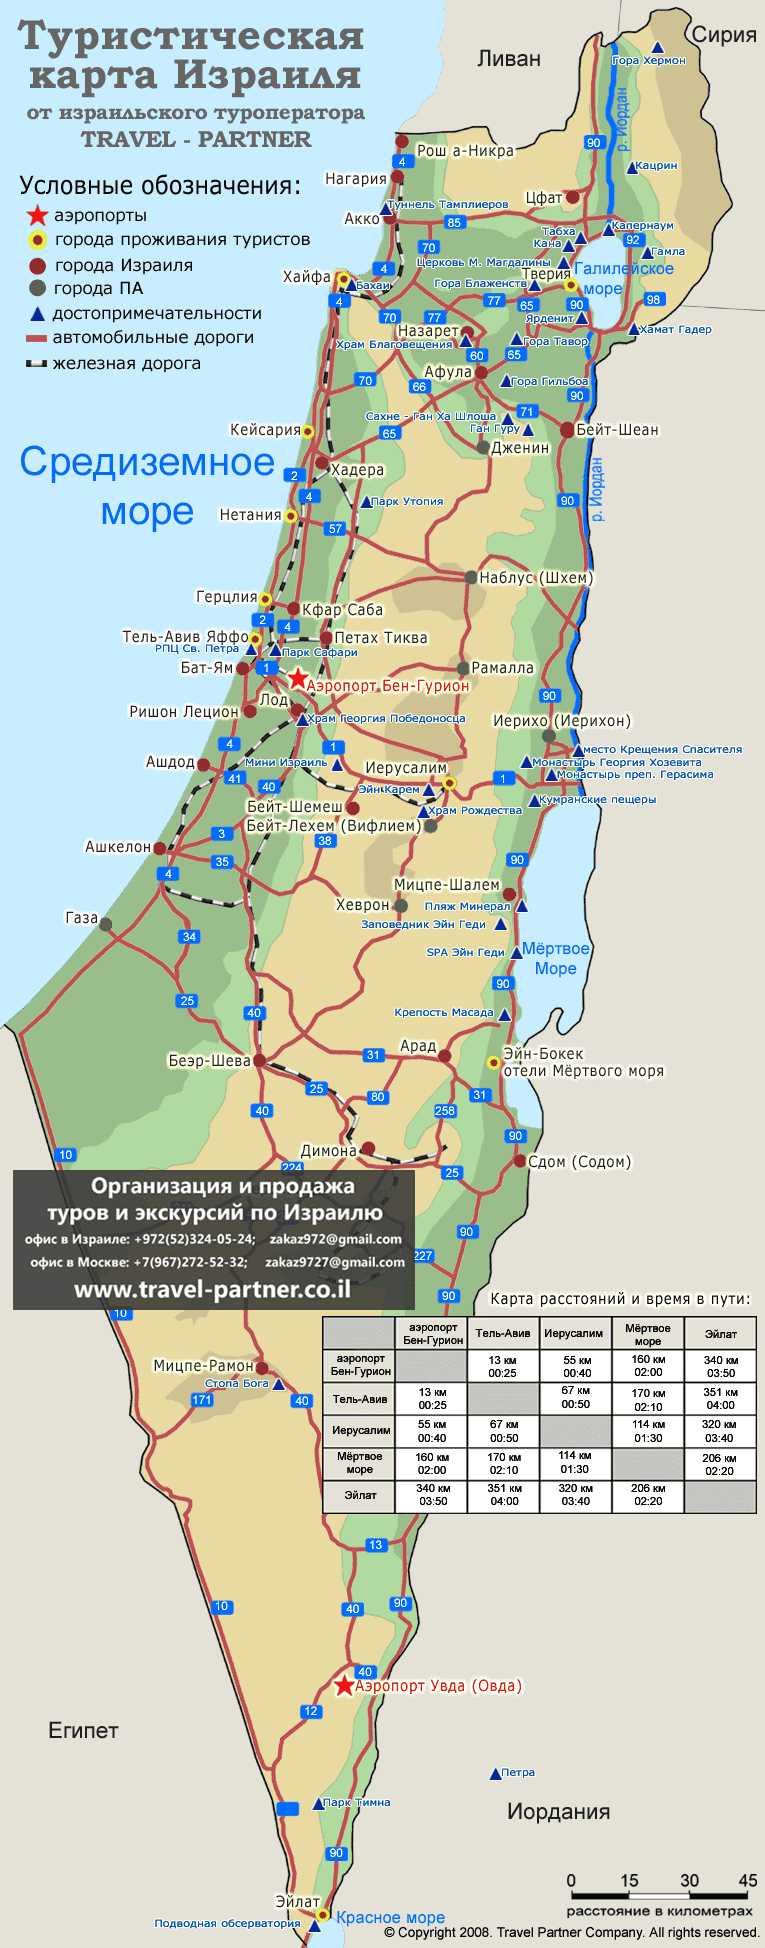 Карта израиля с городами на русском языке с расстояниями между городами